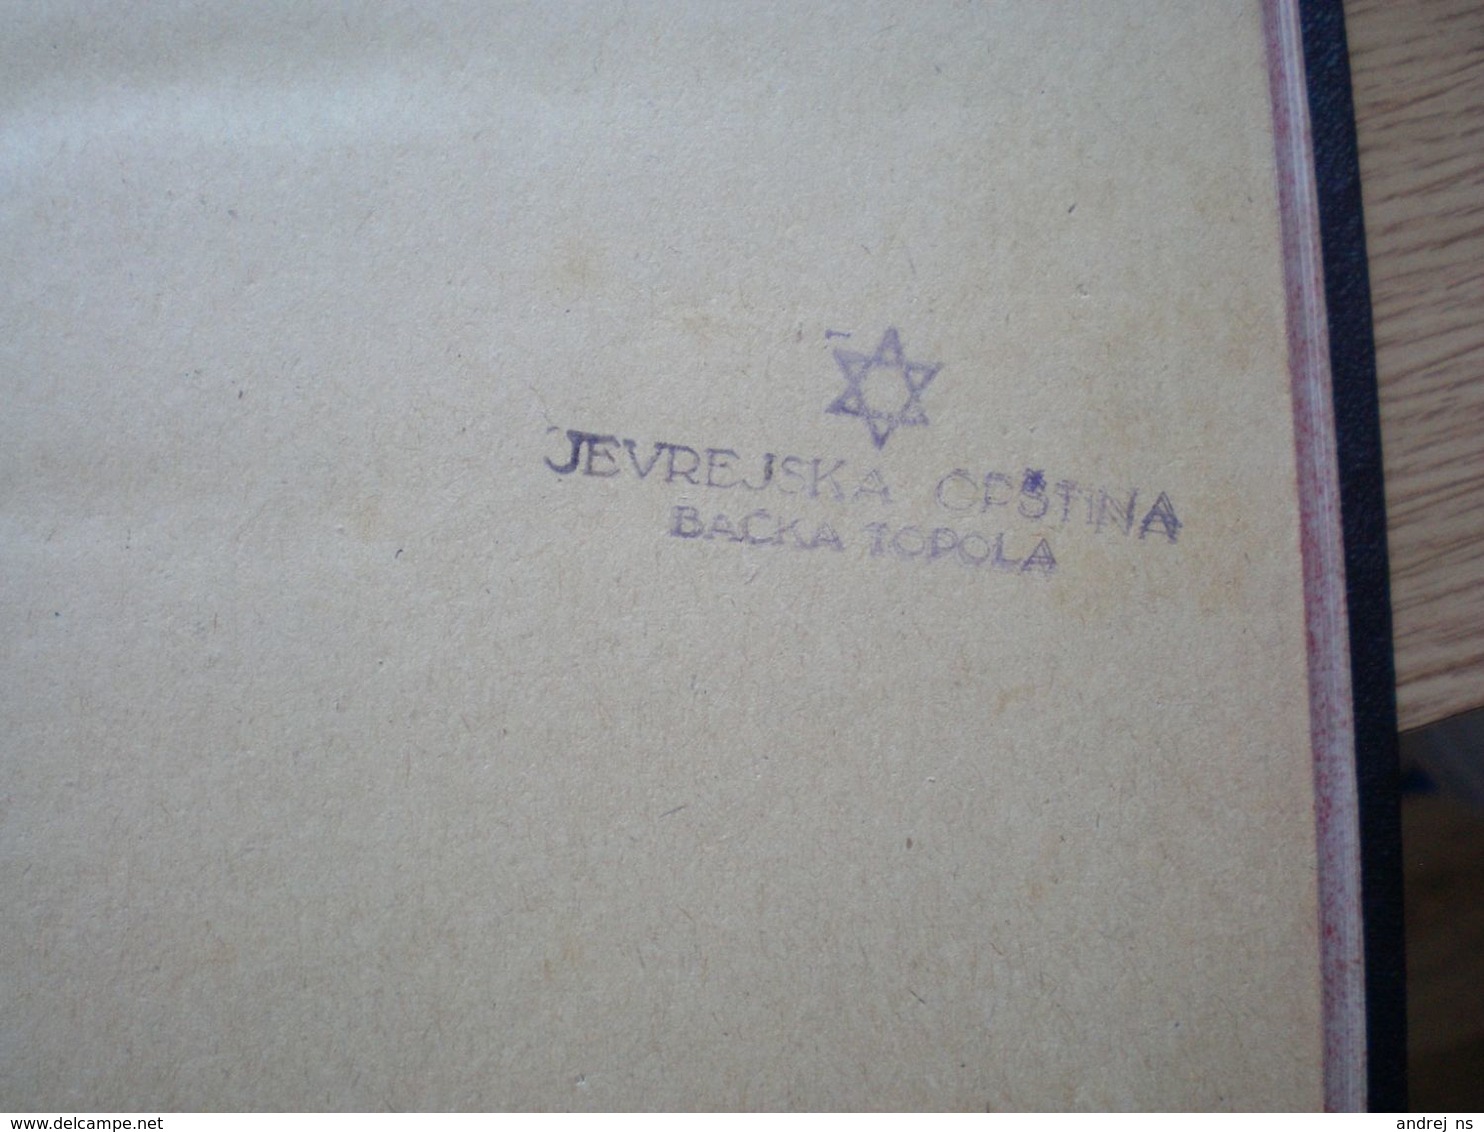 Judaica Festgebete der Israeliten J N Mannheimer Wien 1926 Zweiter Band 310 pages Jevrejska opstina Backa Topola Bacst